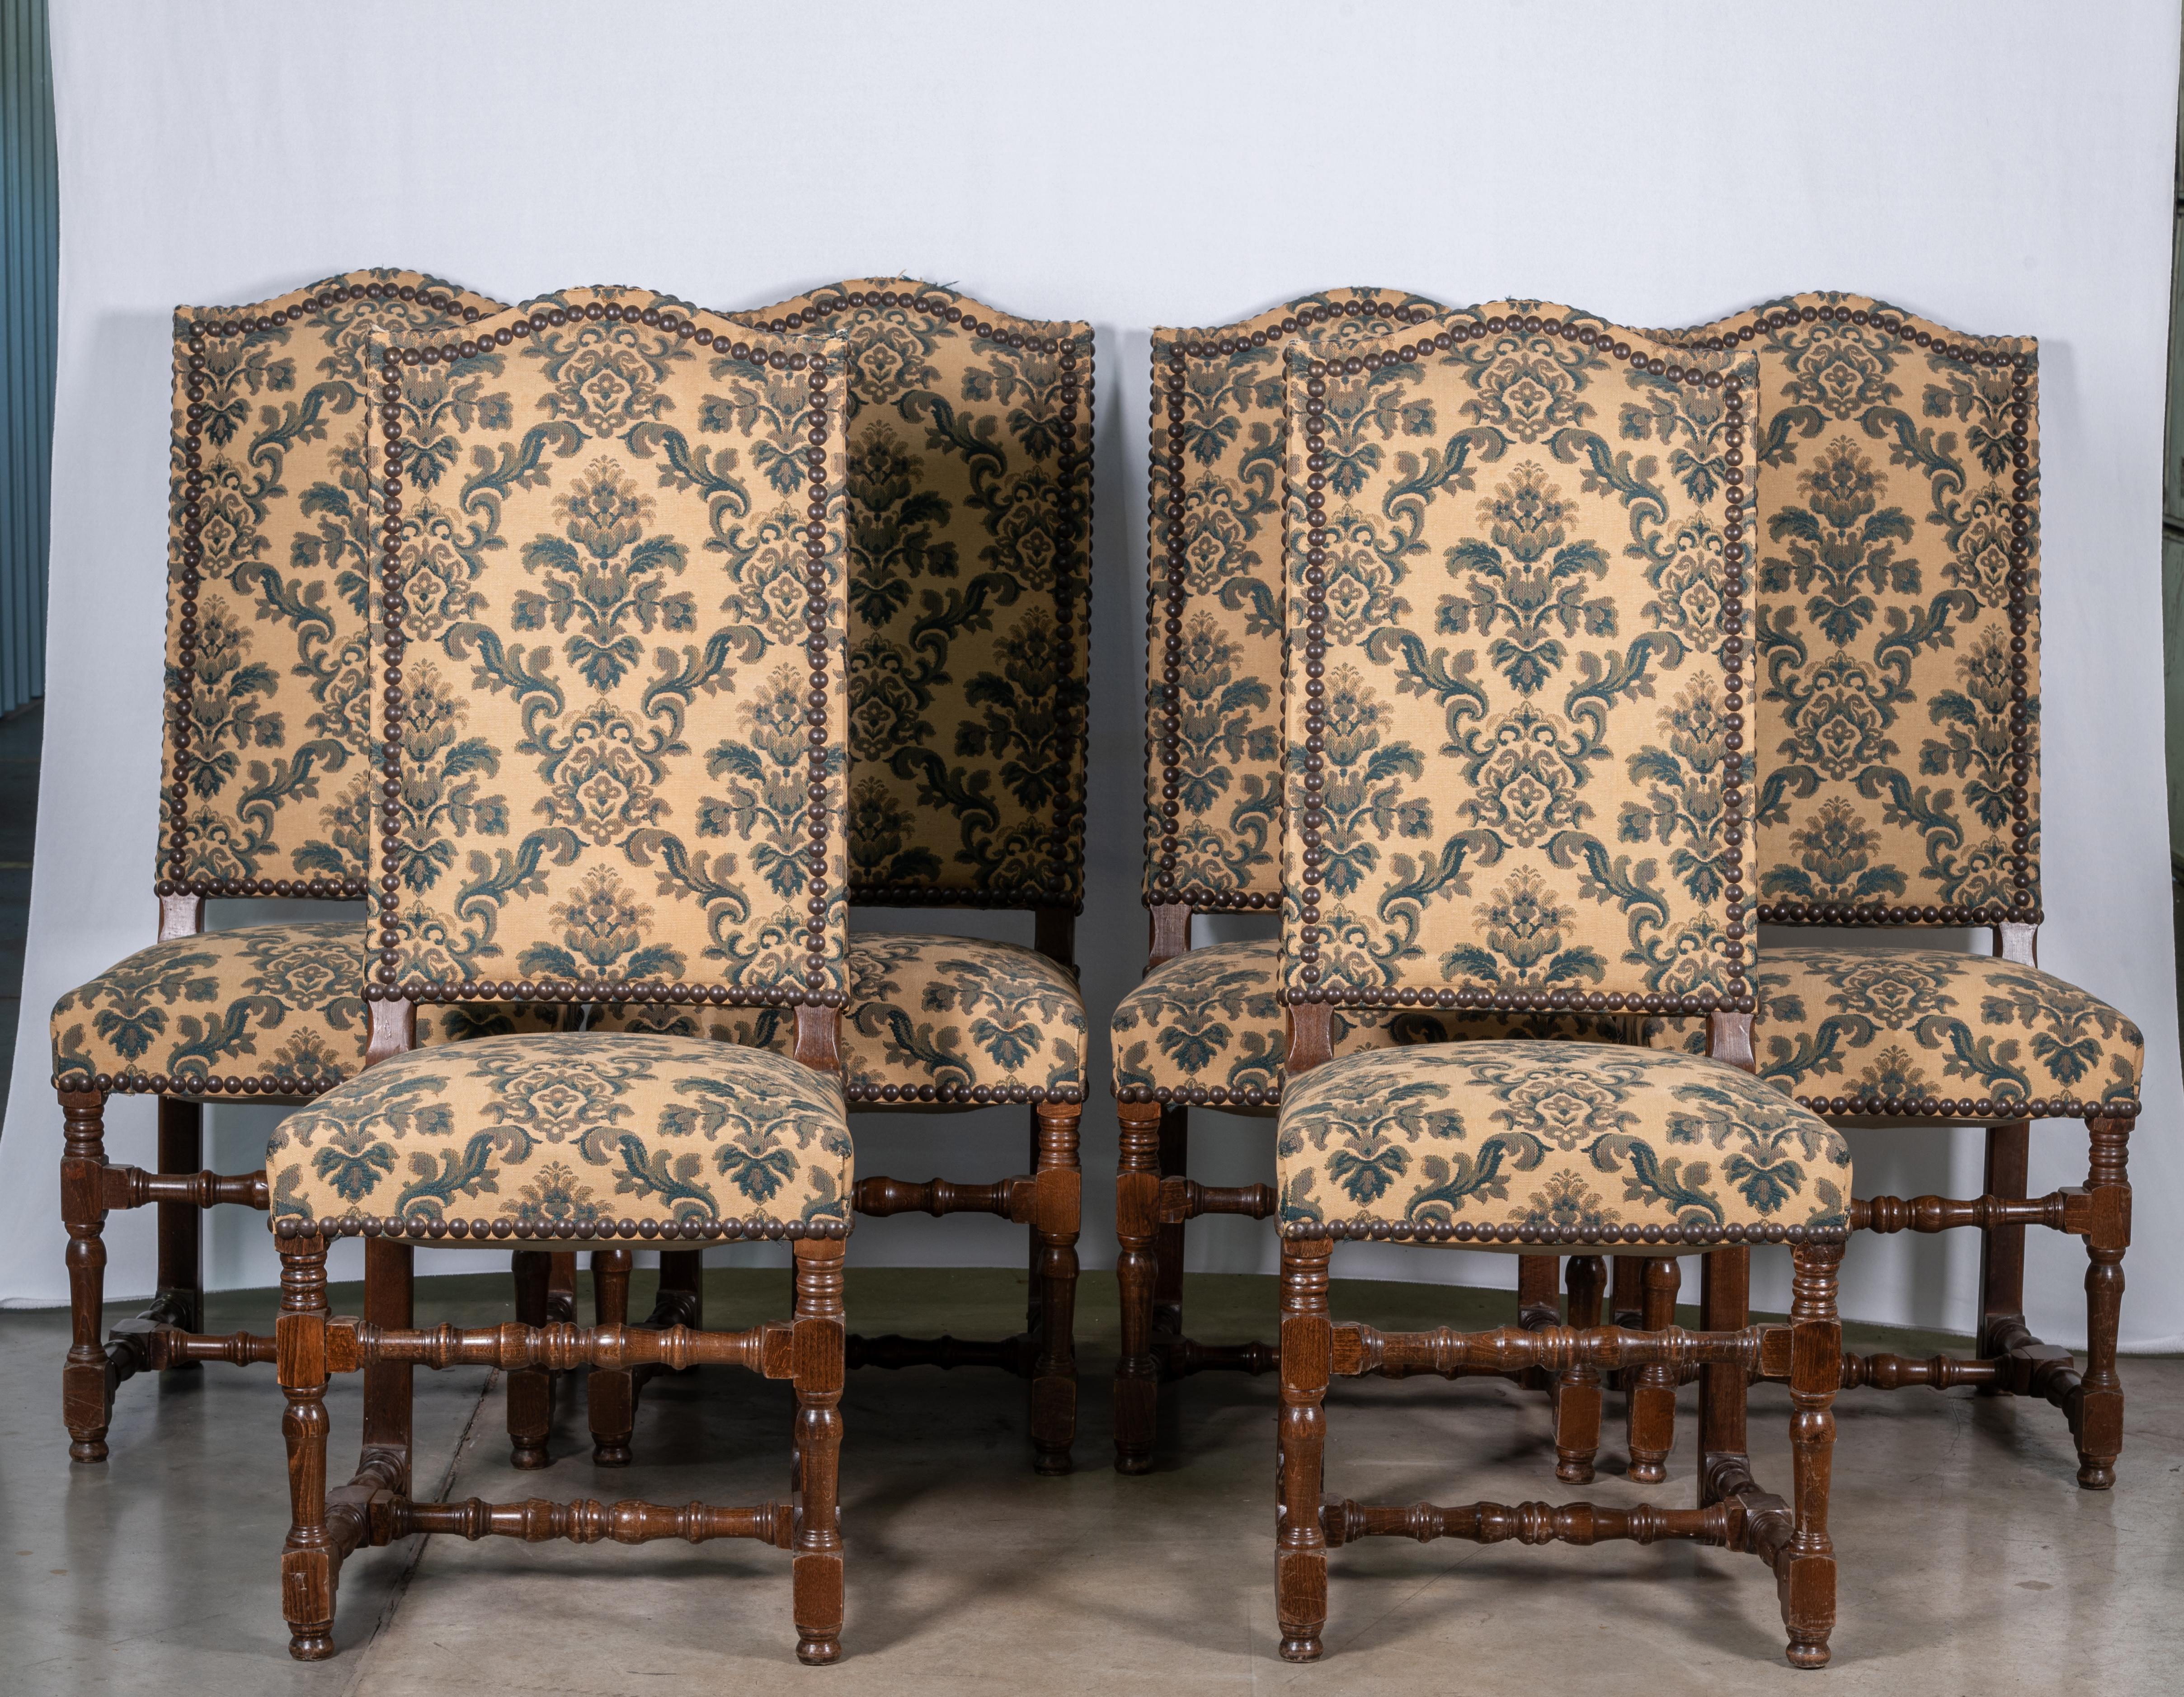 Verschönern Sie Ihr Esszimmer mit unserem Set aus sechs französischen Eichenstühlen aus dem 19. Jahrhundert, die mit einem reizvollen Blumen- und Rankenmuster verziert sind. Diese aus hochwertigem Eichenholz gefertigten Stühle strahlen rustikalen